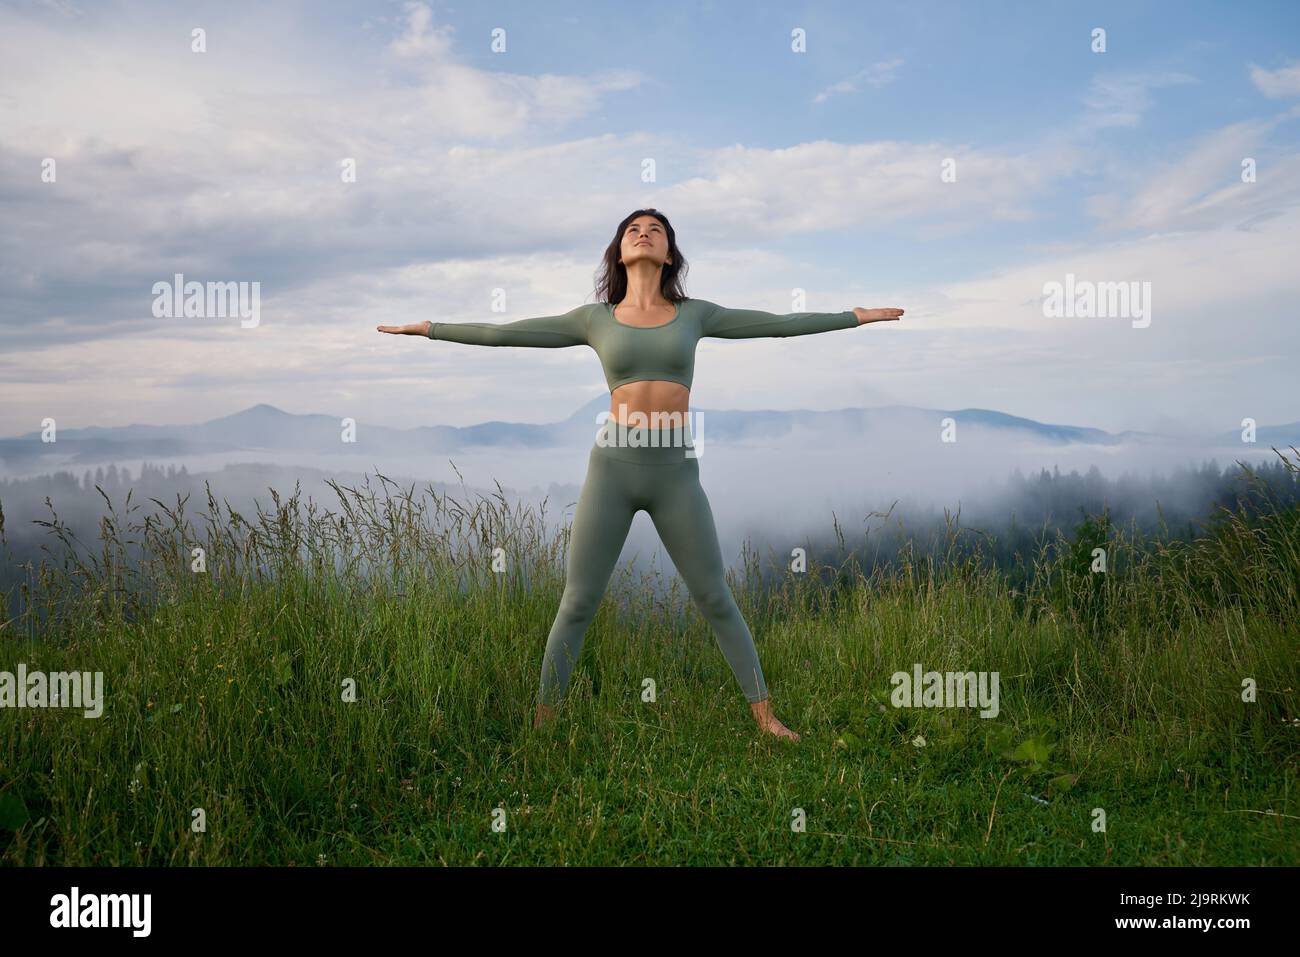 Vista frontal de una mujer morena de pie sobre hierba en la colina de la montaña en pose de ganador, mirando hacia arriba. Atractiva mujer haciendo yoga al aire libre por la mañana entre la niebla. Concepto de salud. Foto de stock